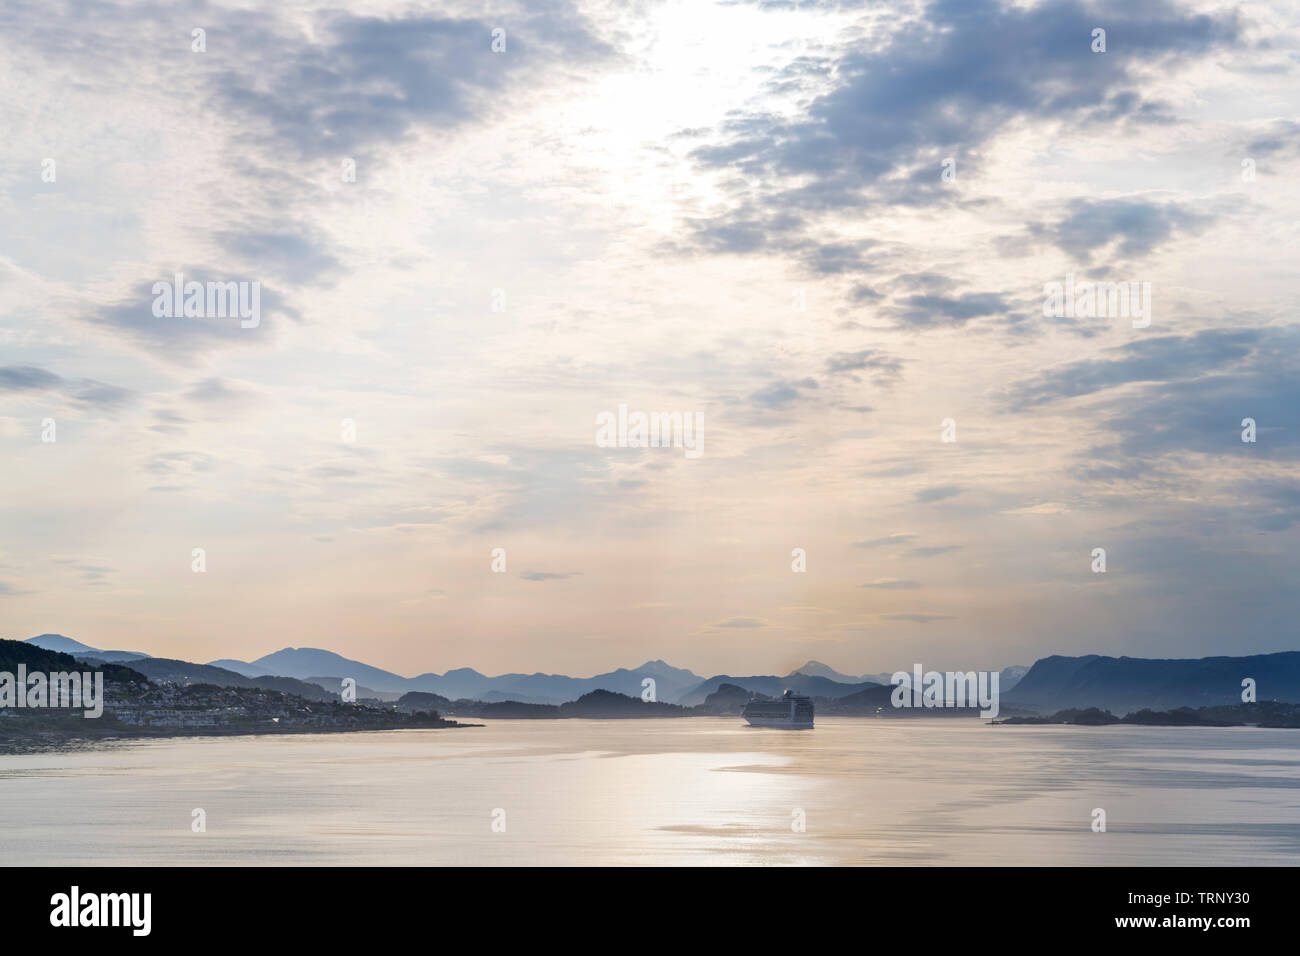 Croisière Fjords norvégiens. Voir l'aube de la ville et le port d'Ålesund à partir de pont du navire de croisière TUI Marella Explorer, Møre og Romsdal, Norvège, Sunnmøre Banque D'Images